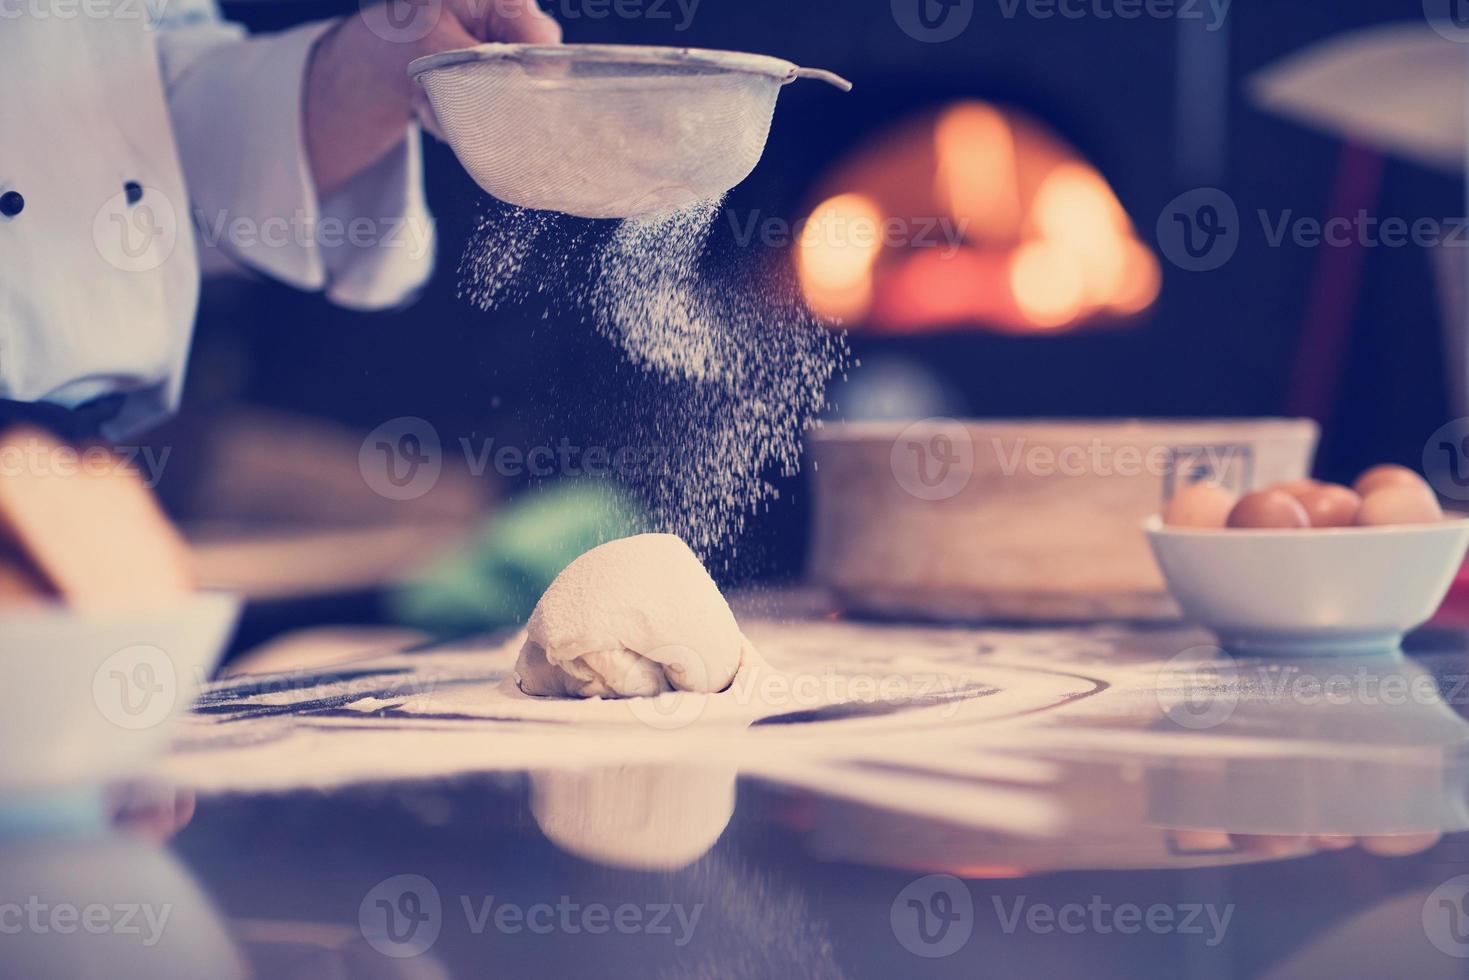 chef polvilhando farinha sobre a massa de pizza fresca foto